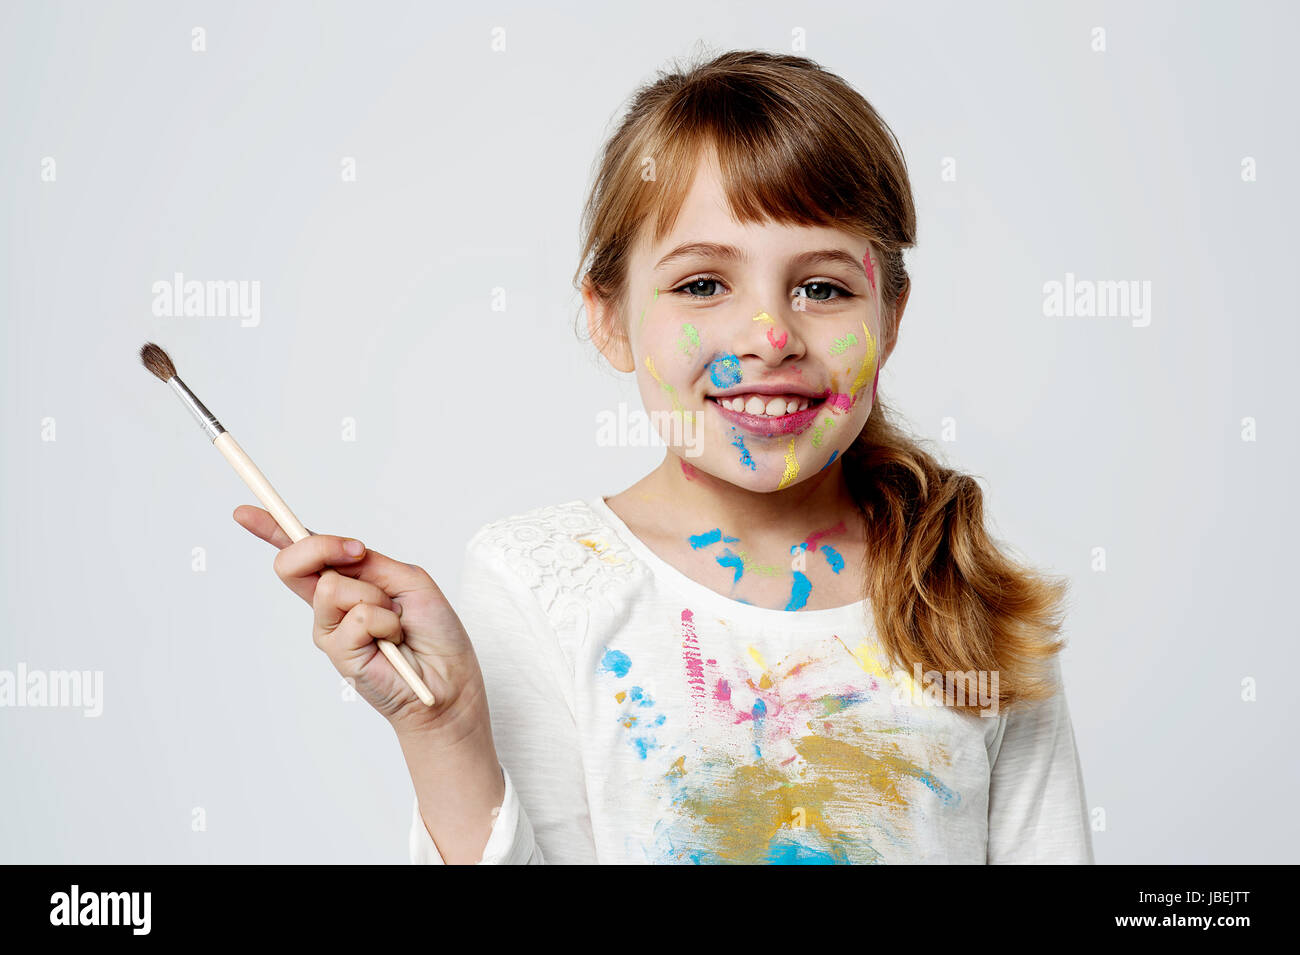 Jolie petite fille tenant un pinceau peinture Banque D'Images